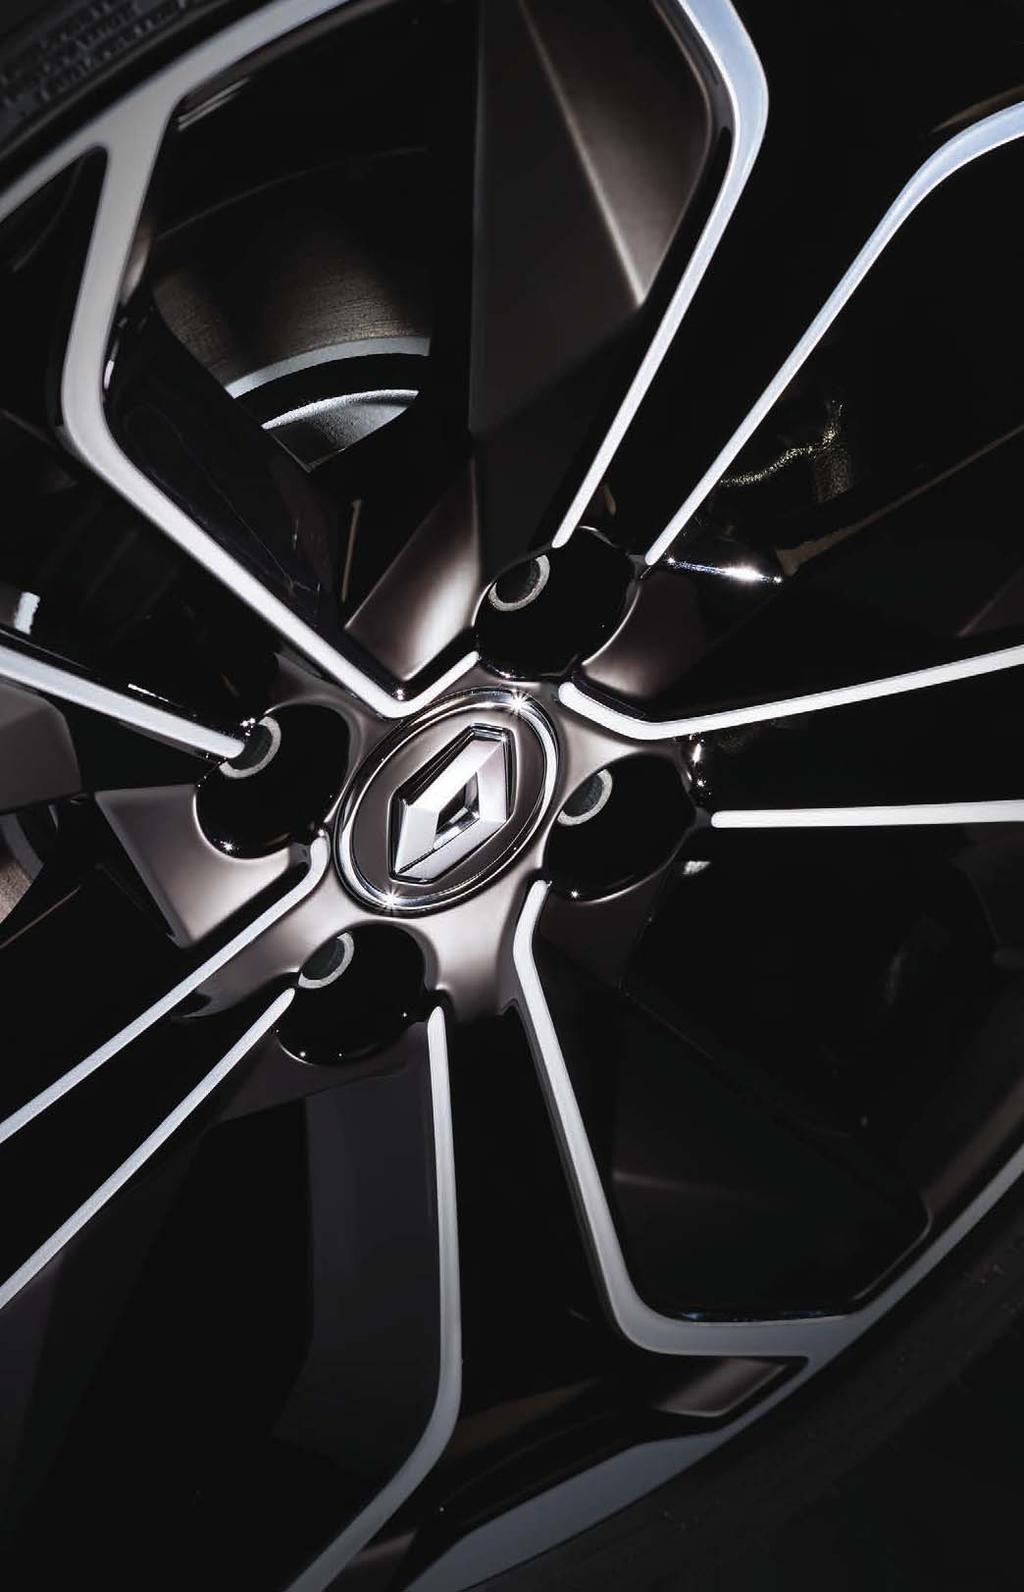 Cura di ogni dettaglio Intrigante e seducente. Renault CLIO si impone con le sue linee moderne e distintive.